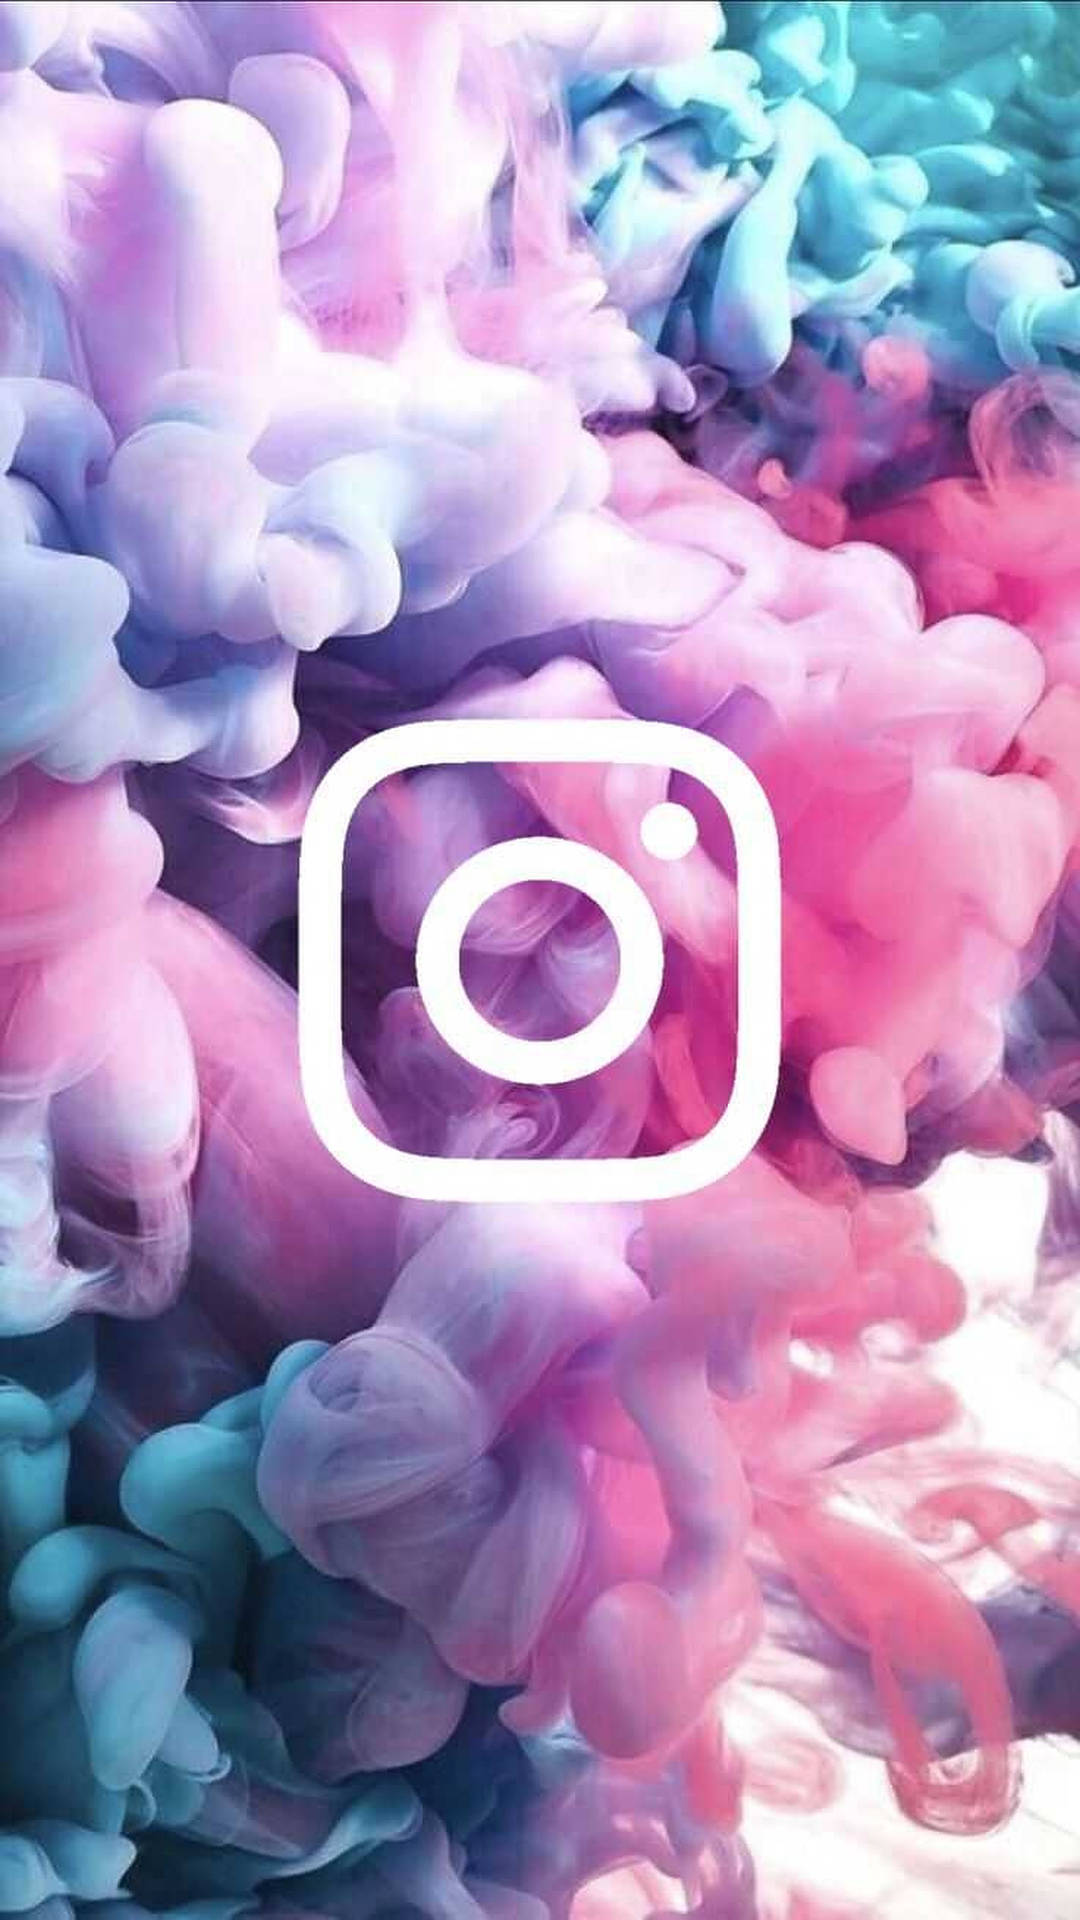 50+] Instagram Desktop Wallpaper - WallpaperSafari